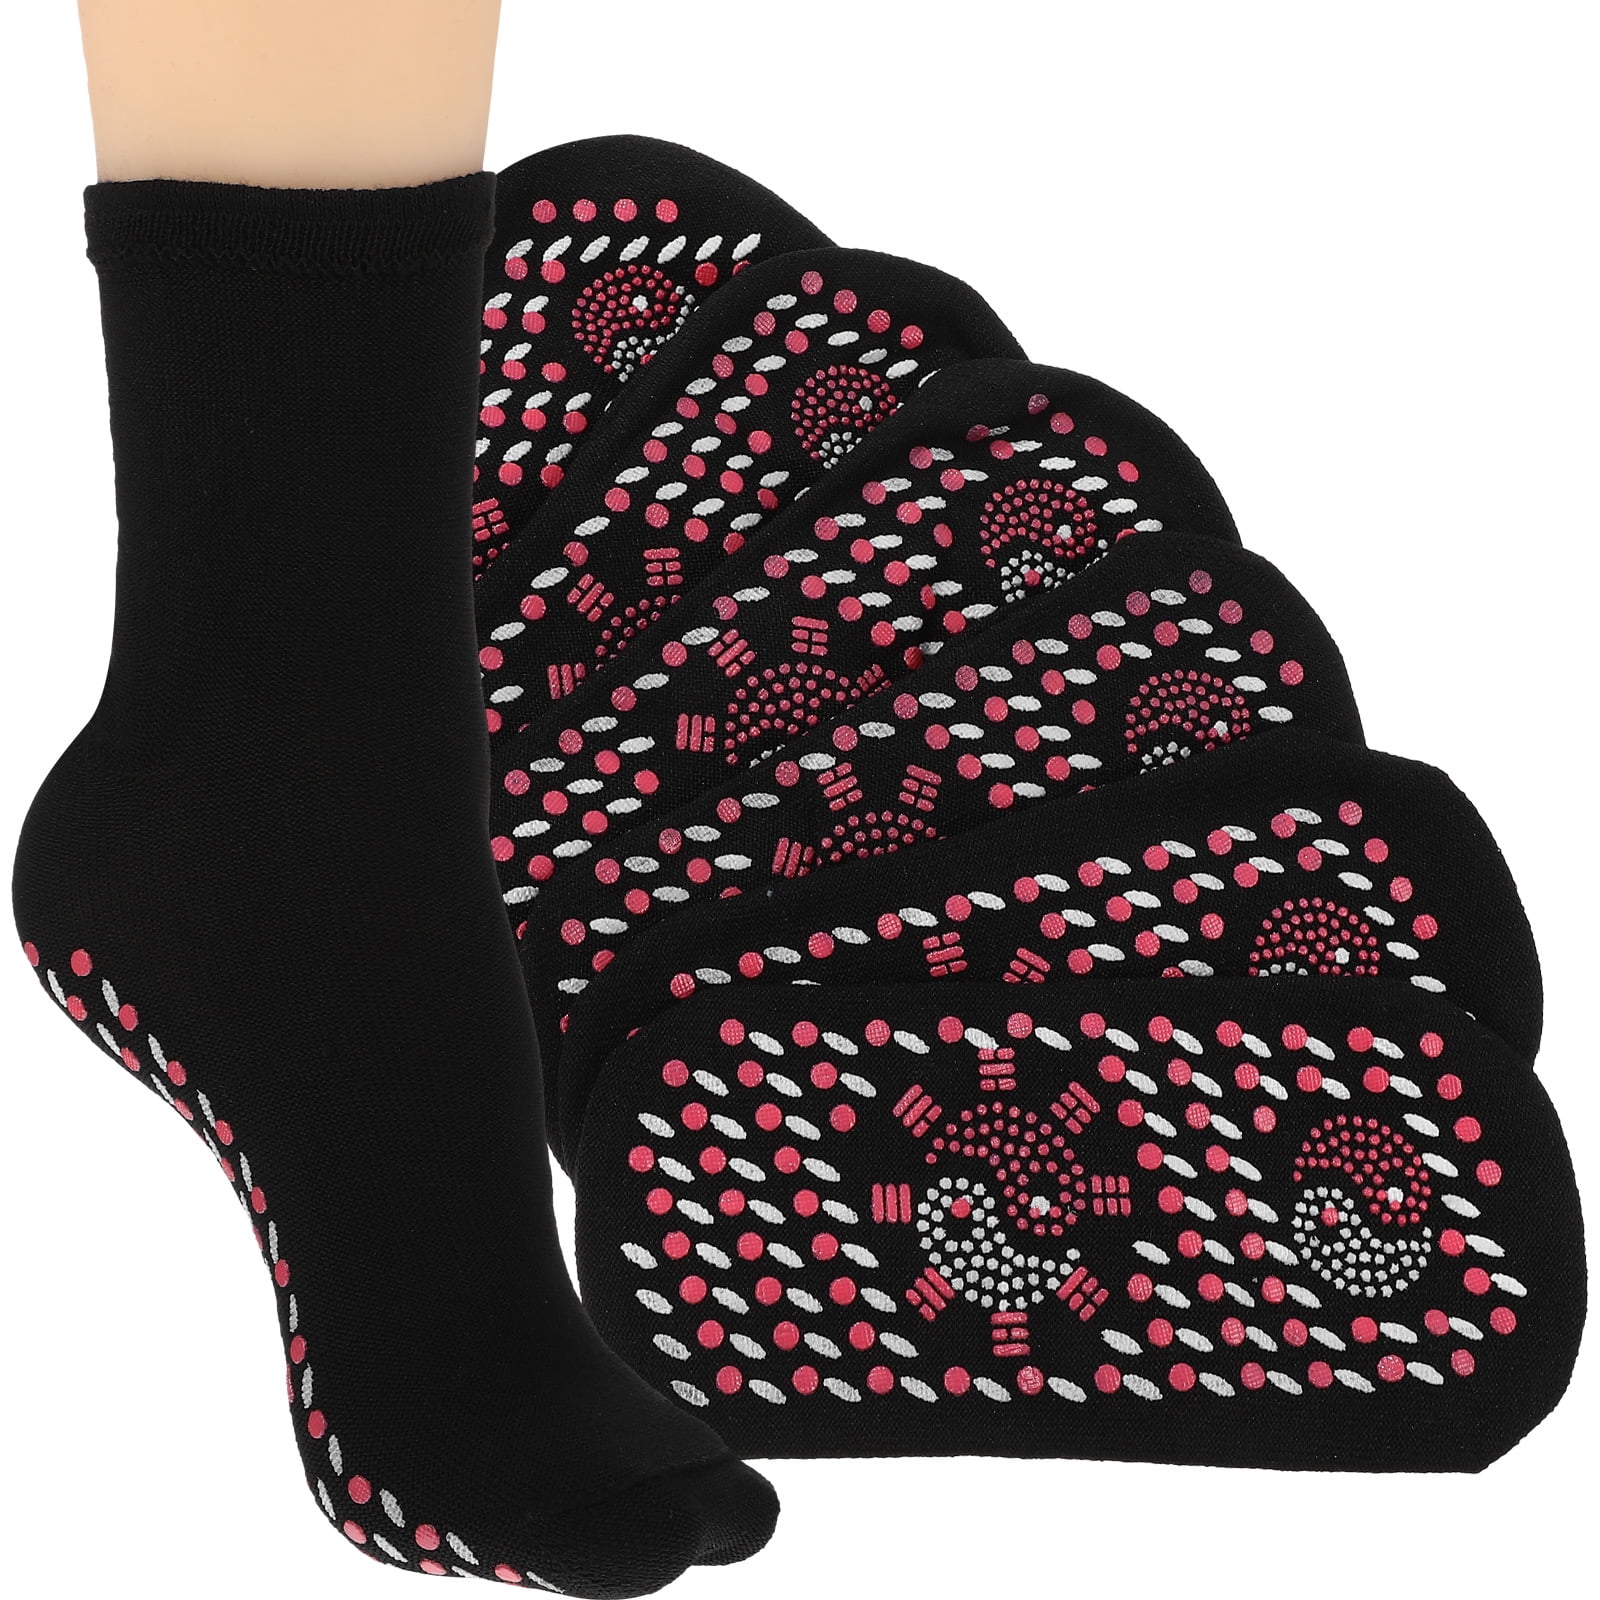 8 Pairs of Thermal Socks Self Heated Socks Comfortable Breathable Socks ...